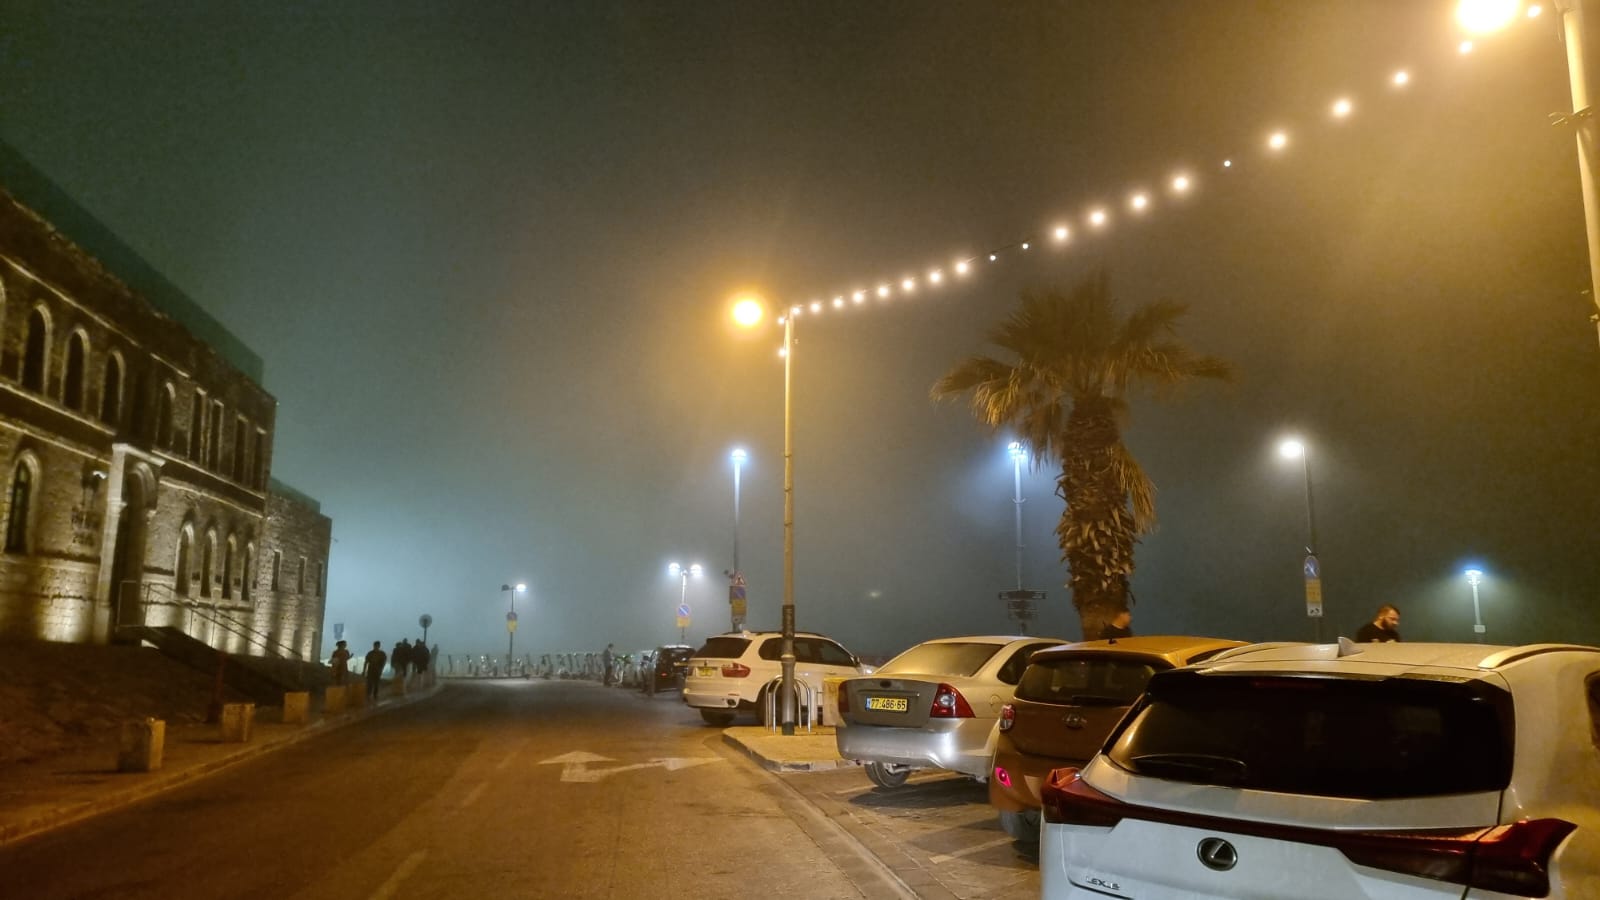 ضباب كثيف يُخيّم على الأجواء في يافا وتدني مستوى الرؤية 